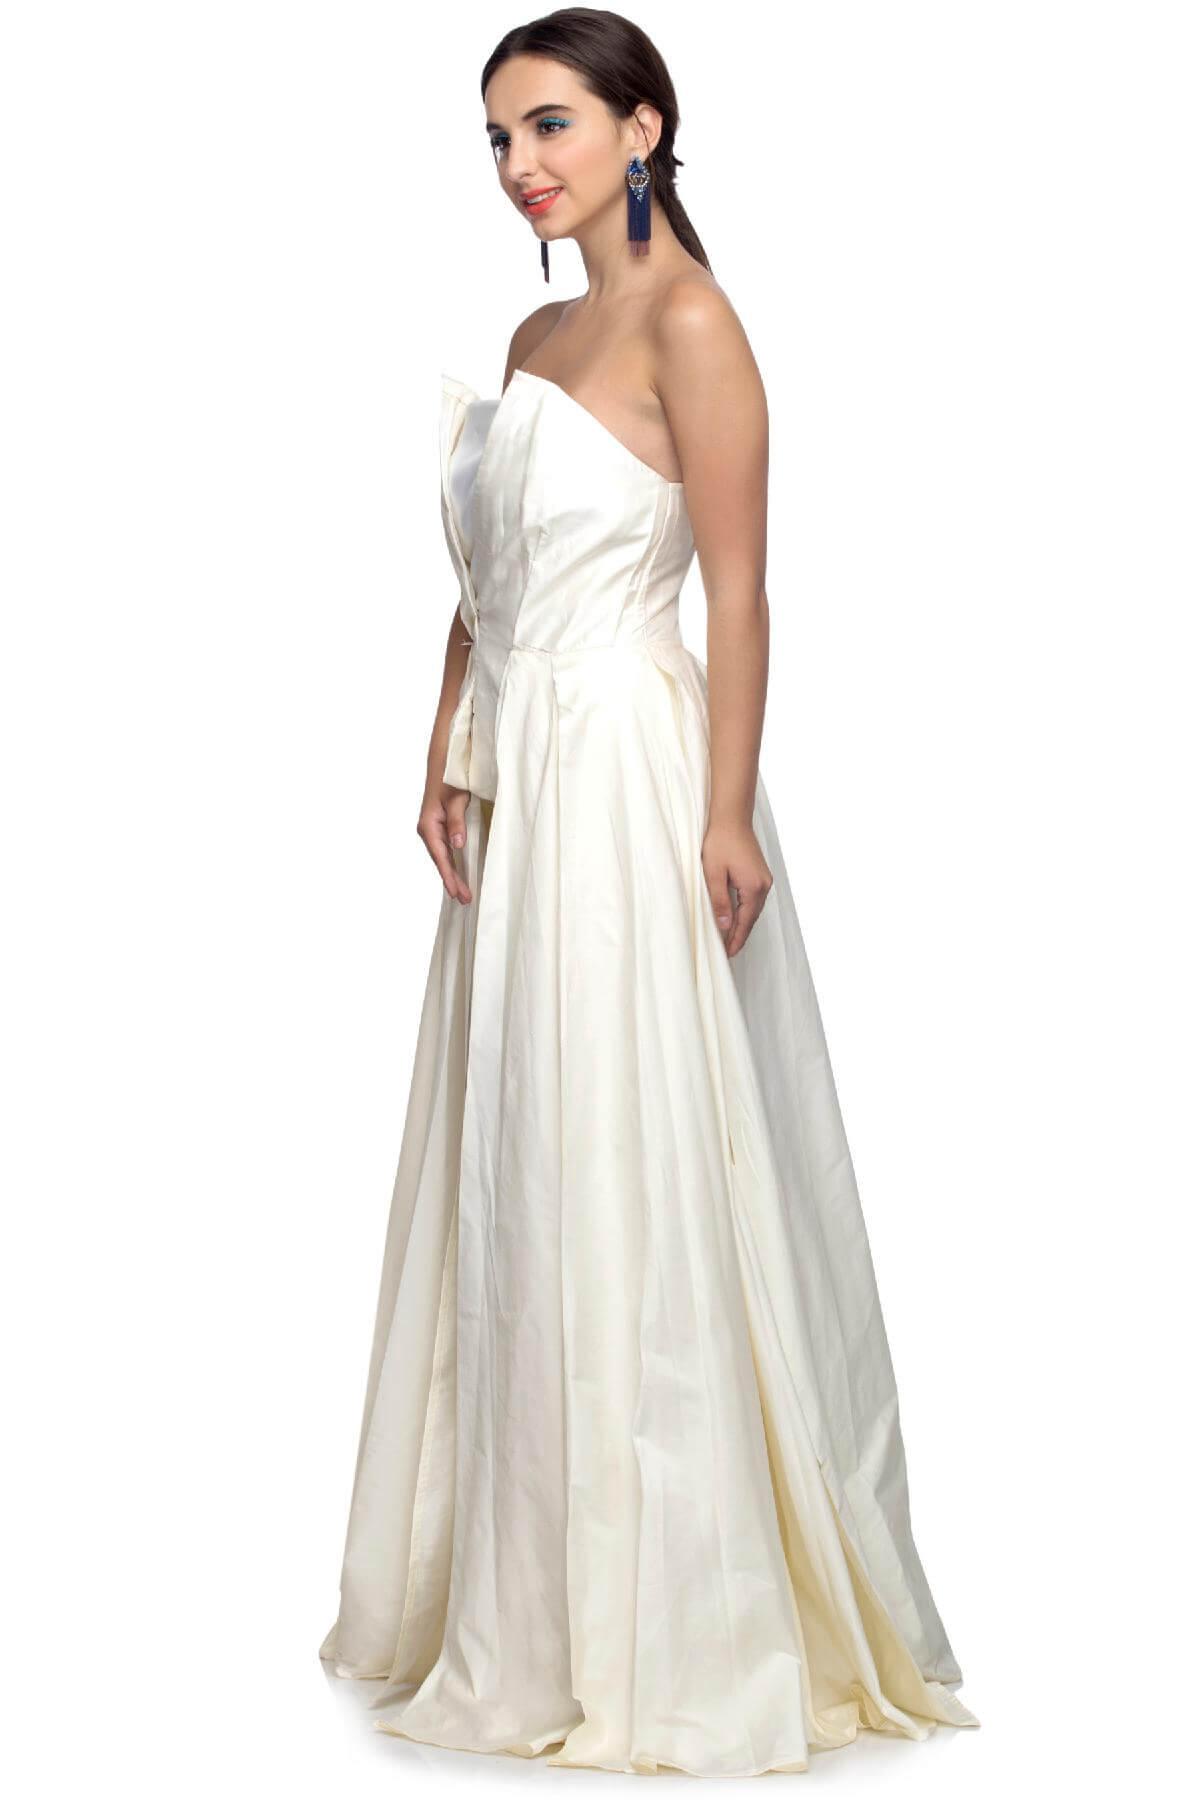 LIME Women Bodycon Red, White Dress - Buy LIME Women Bodycon Red, White  Dress Online at Best Prices in India | Flipkart.com